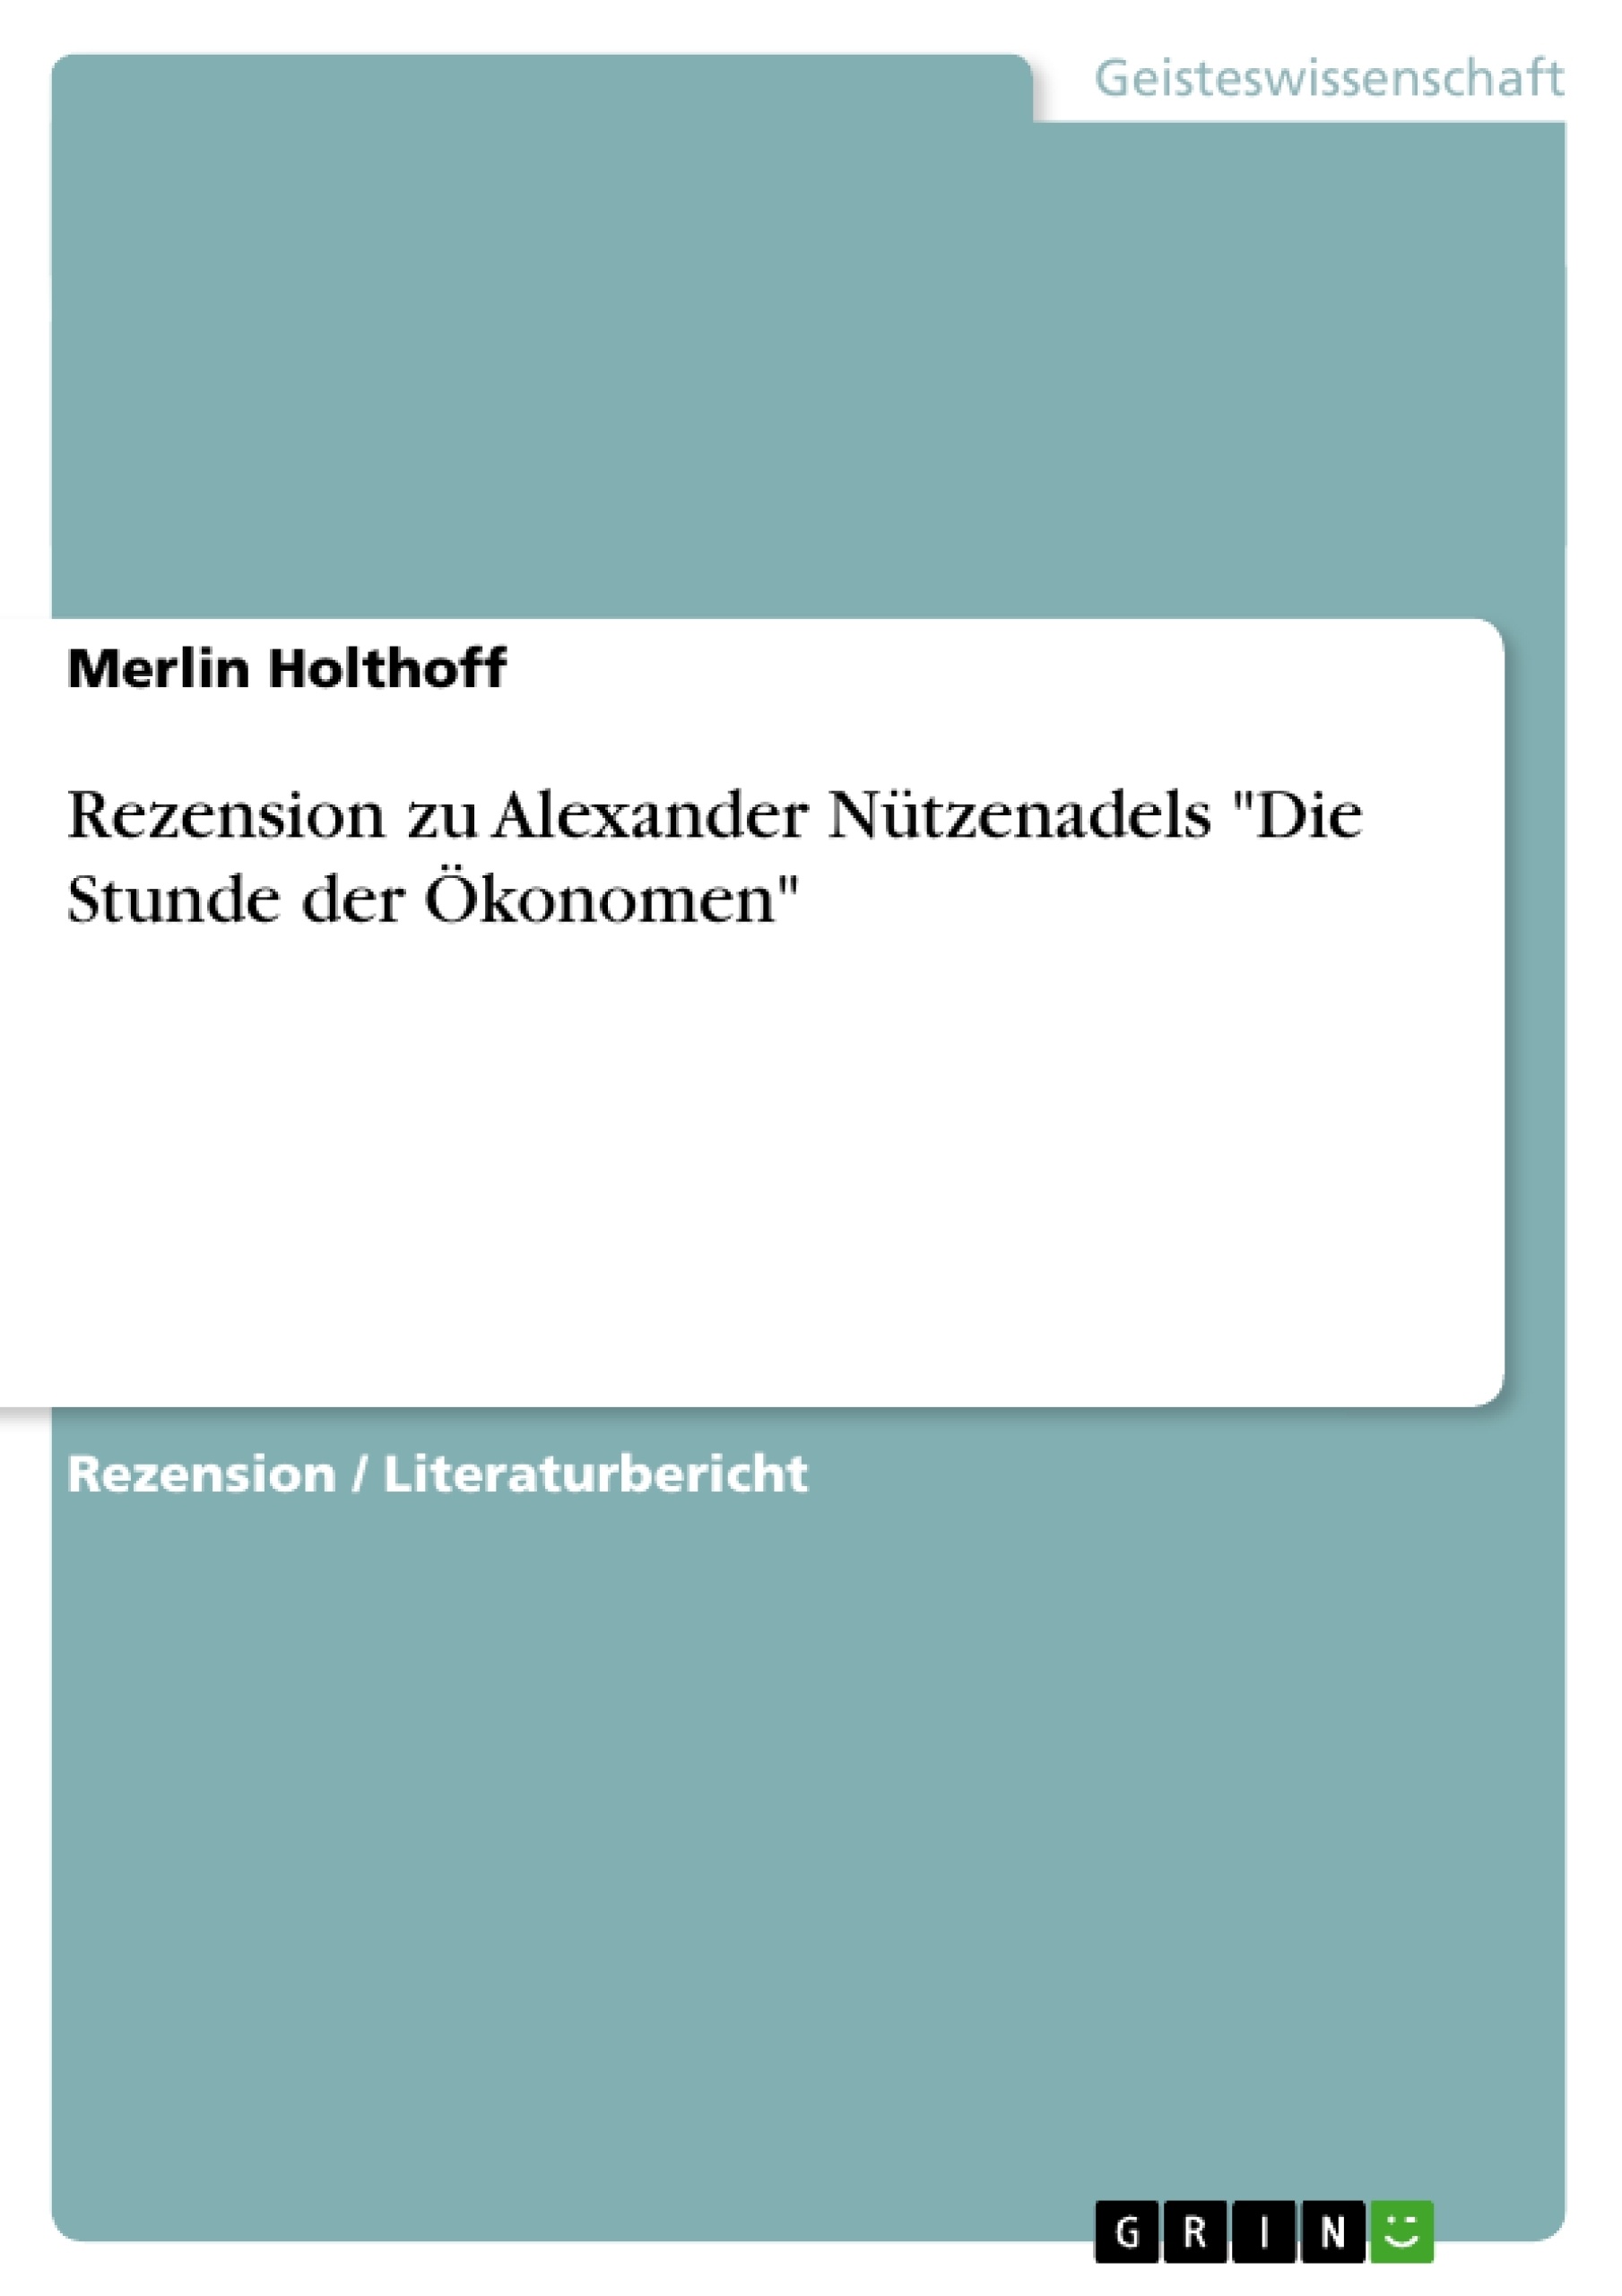 Título: Rezension zu Alexander Nützenadels "Die Stunde der Ökonomen"